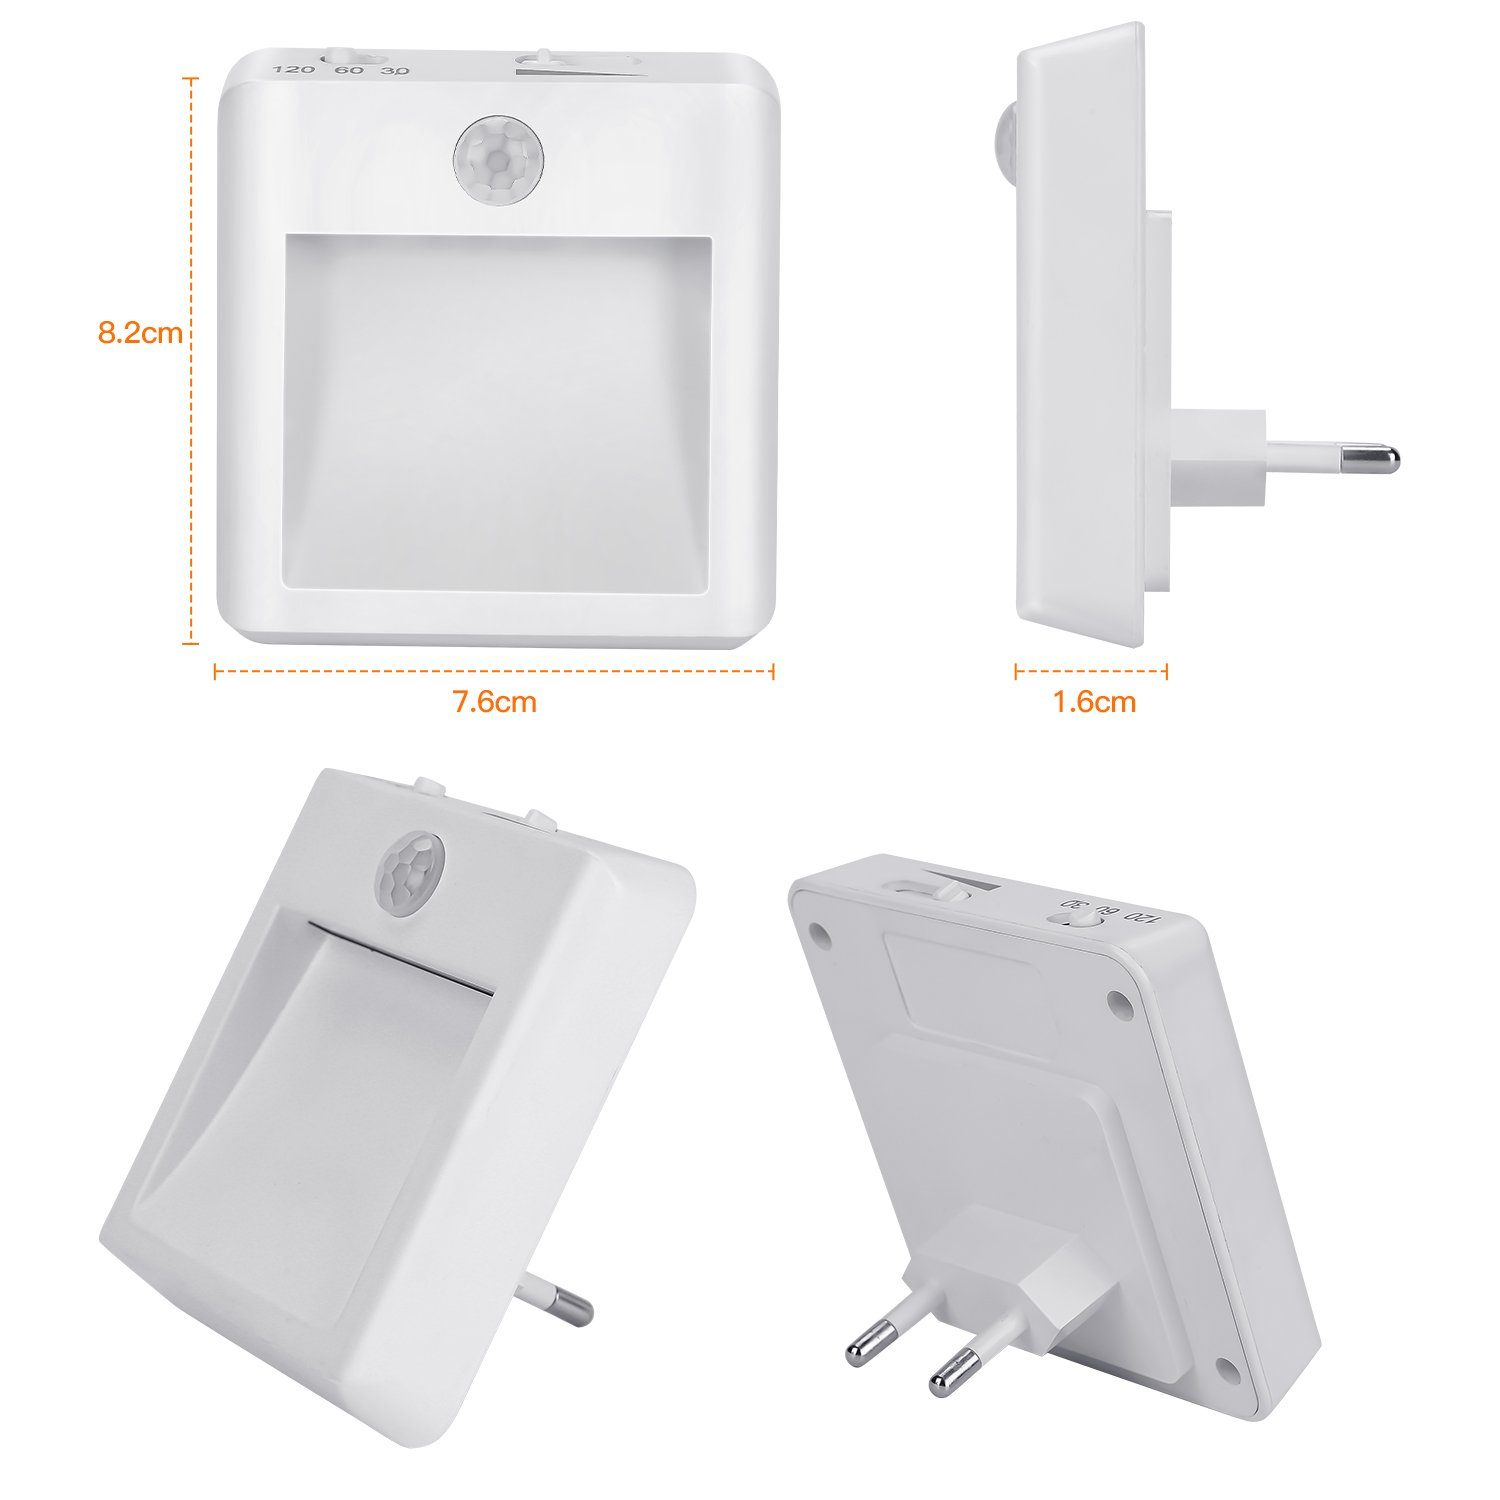 Treppen Sensor Schlafzimmer Smart Sensor Lampen LED Toiletten Saving für Flure LED Stück Lampe Dämmerungssensor Nacht Clanmacy Nachtlicht Nachtlicht Nacht Licht 2